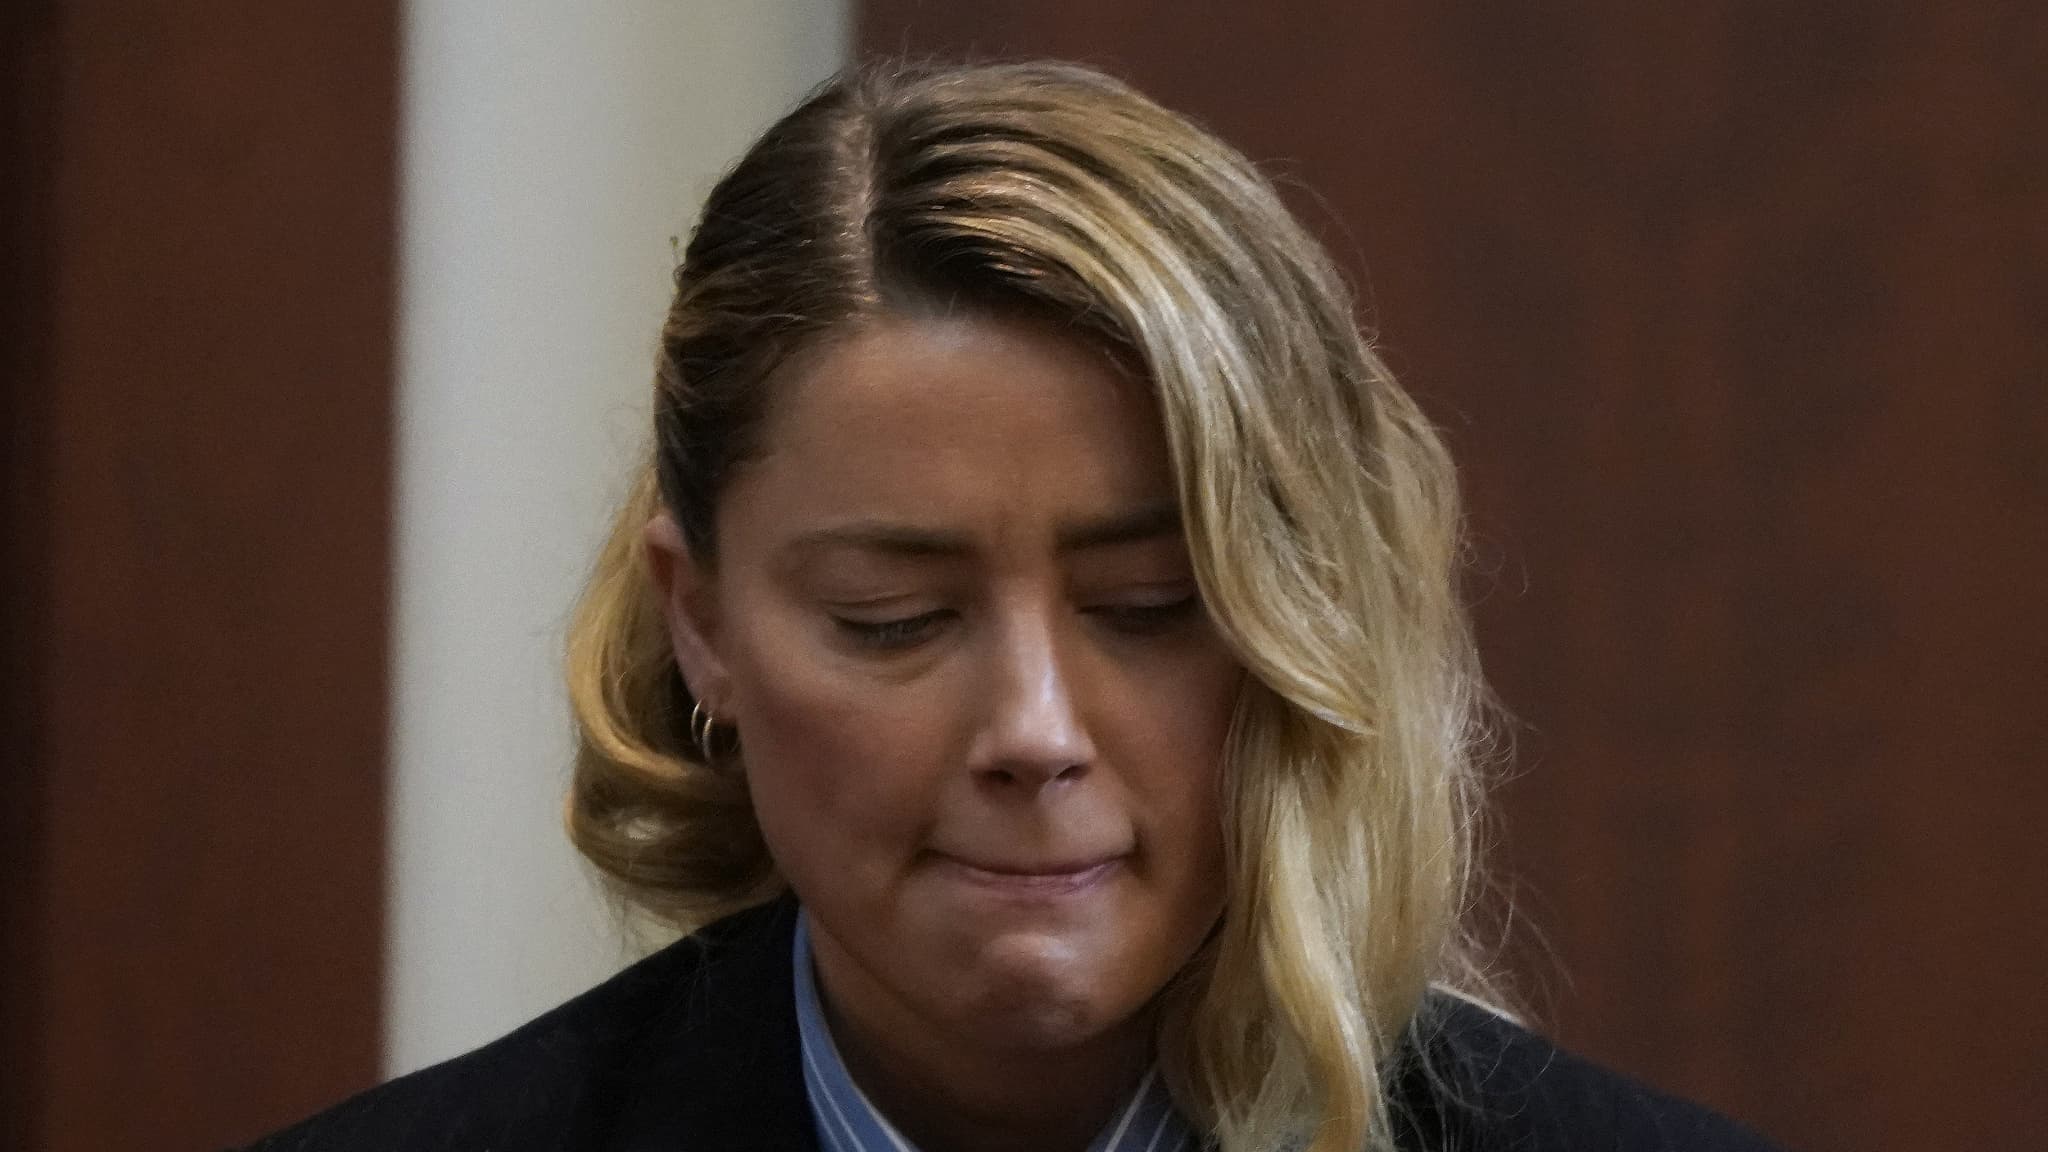 LIVE - "He slapped me": Amber Heard holds back tears during her testimony against Johnny Depp